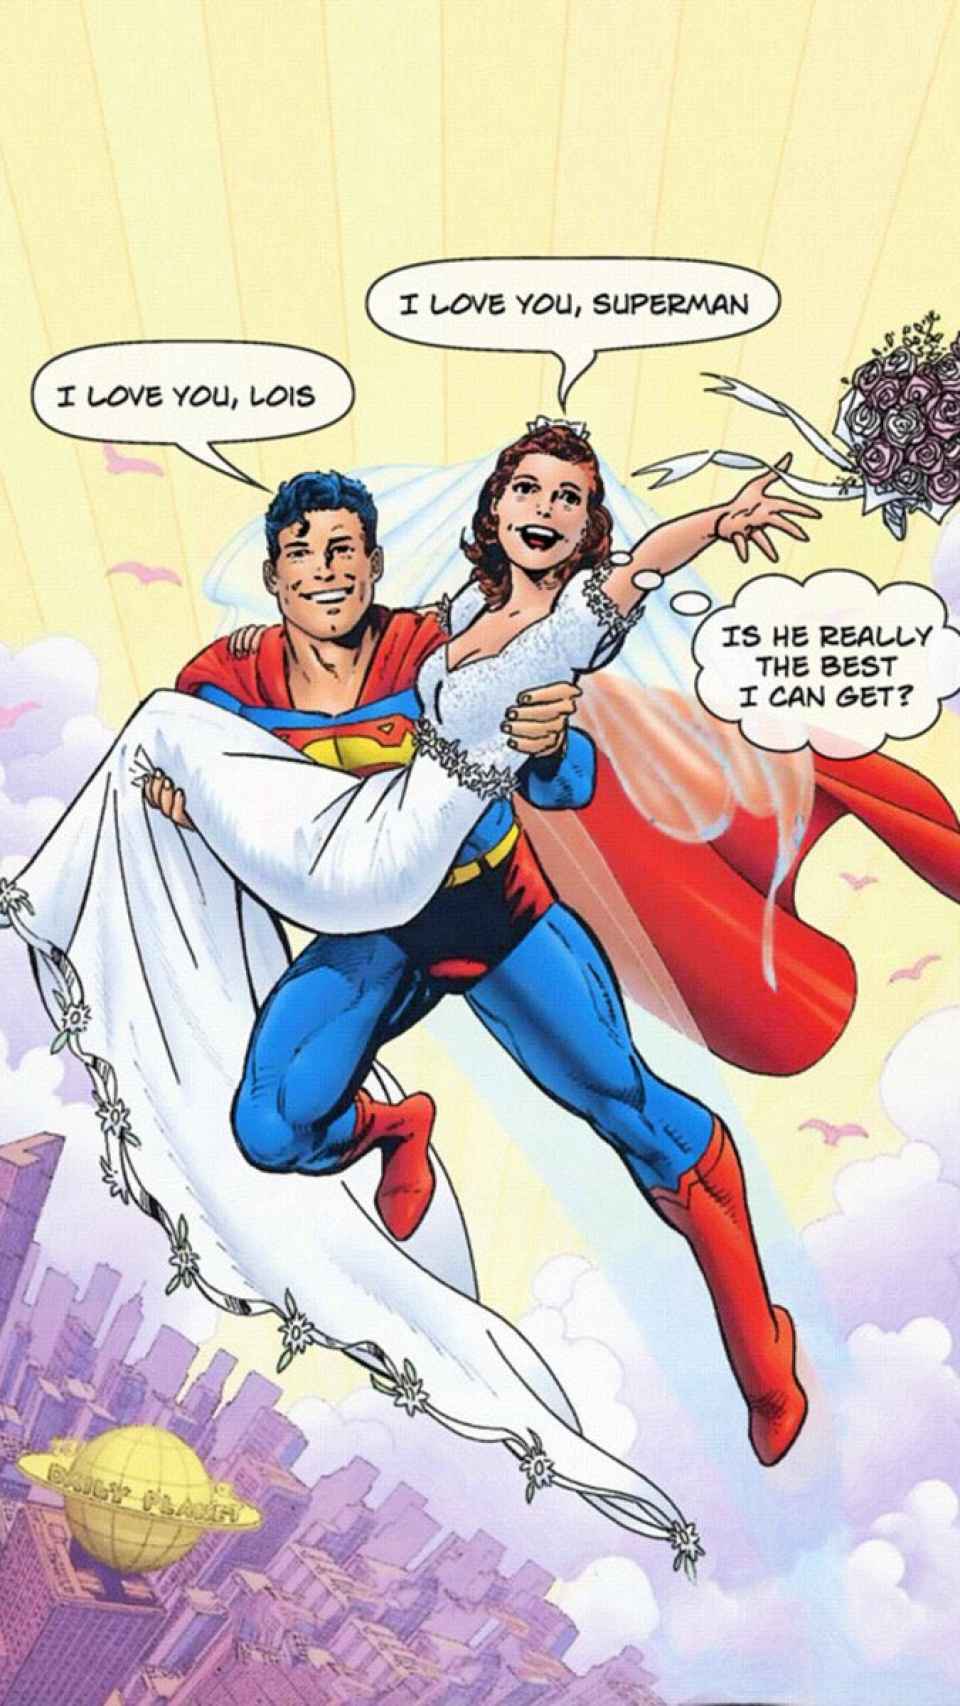 Lois Lane se pregunta, tras casarse con Superman, si es lo mejor que puede conseguir.